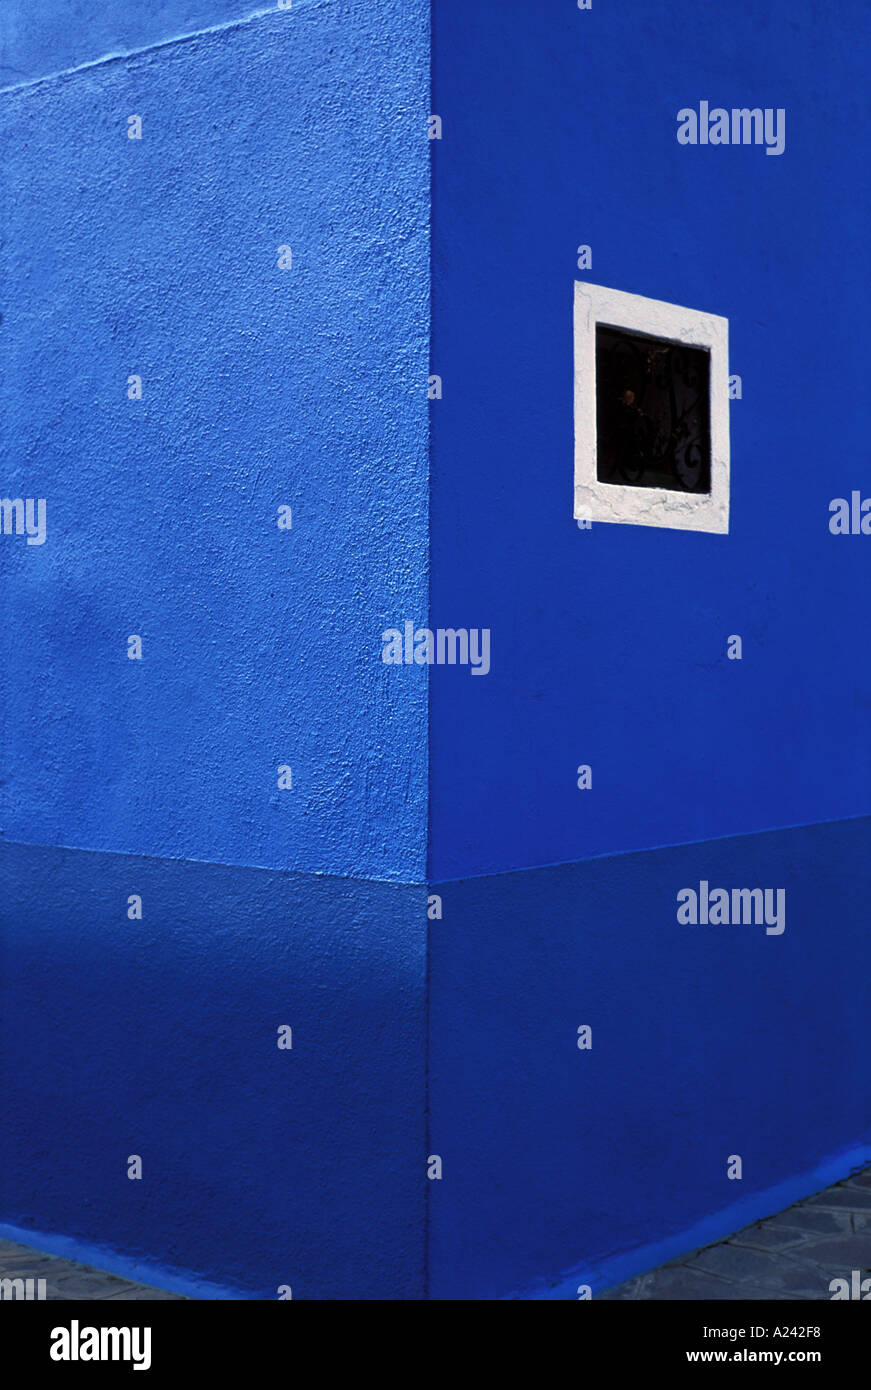 Italie Venise Burano résumé détail d'une maison peint en bleu Banque D'Images